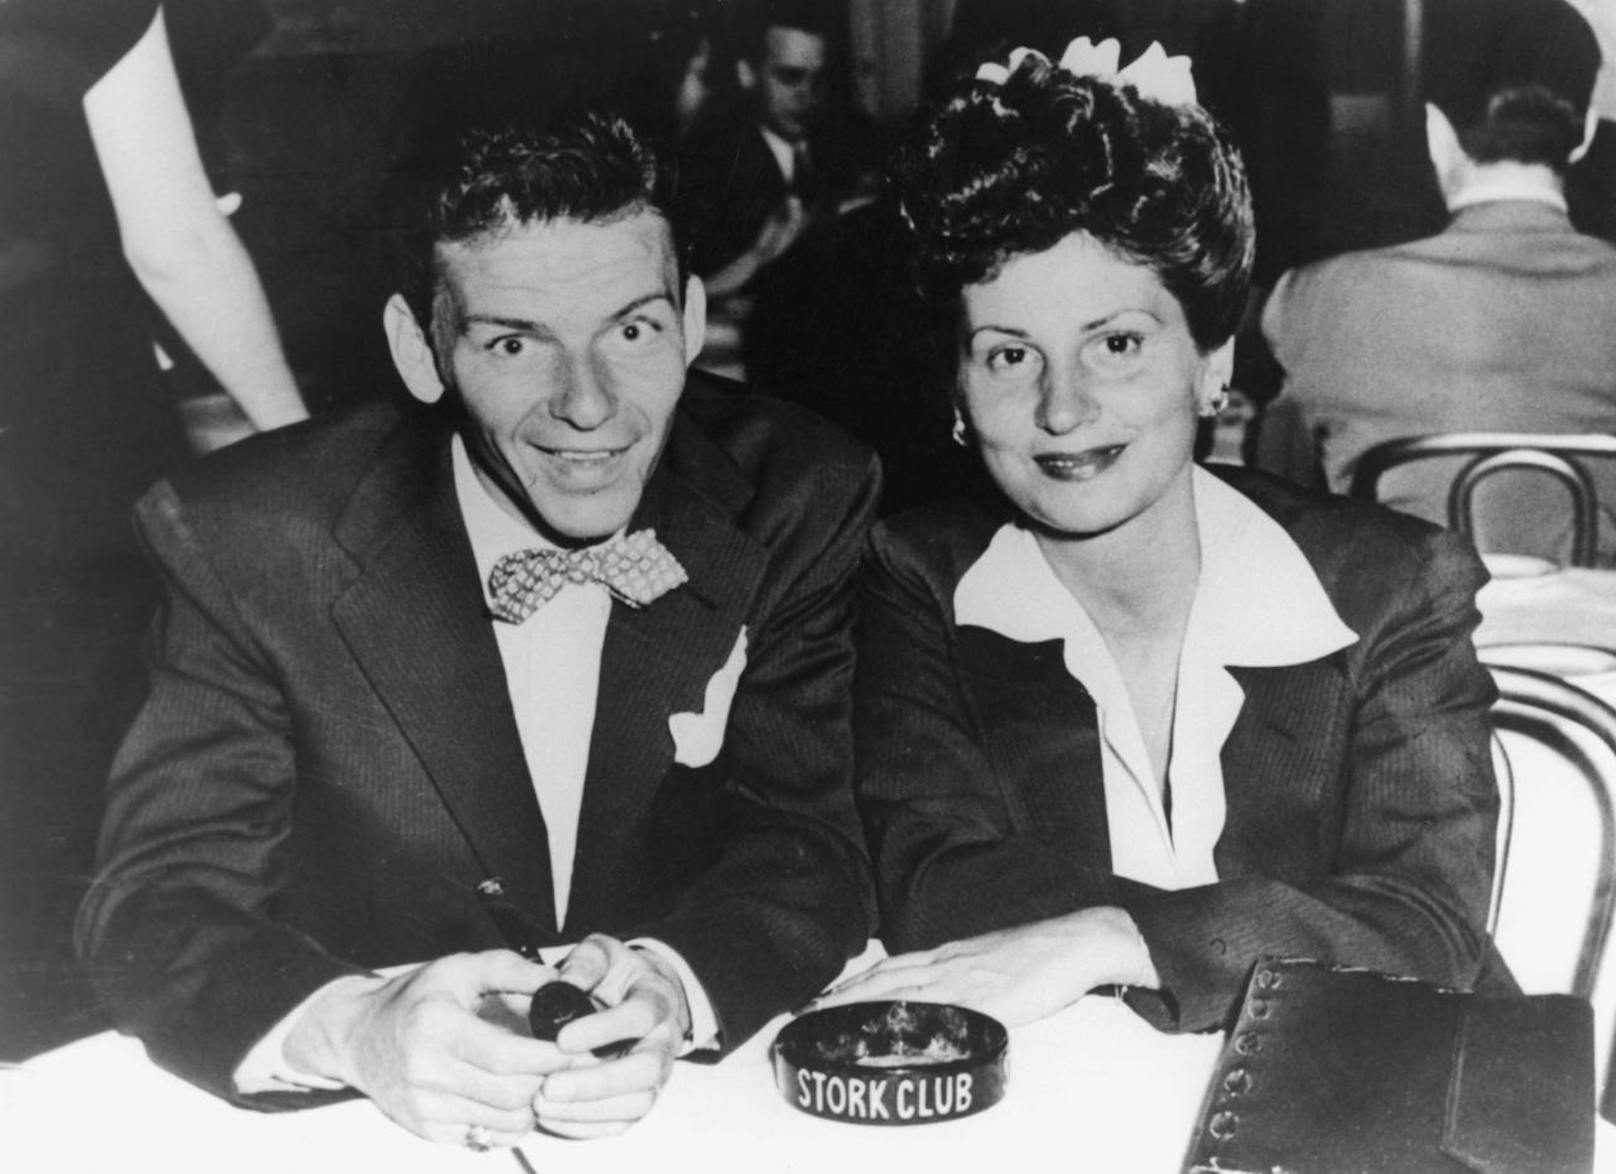 Sinatras Aufstieg zu Weltruhm als Sänger und Schauspieler in den kommenden Jahren und zahlreiche Affären ließen die Ehe nach mehreren turbulenten Jahren zerbrechen. 1951 folgte die Scheidung. Im Bild: Frank Sinatra und seine Ehefrau Nancy,1943.